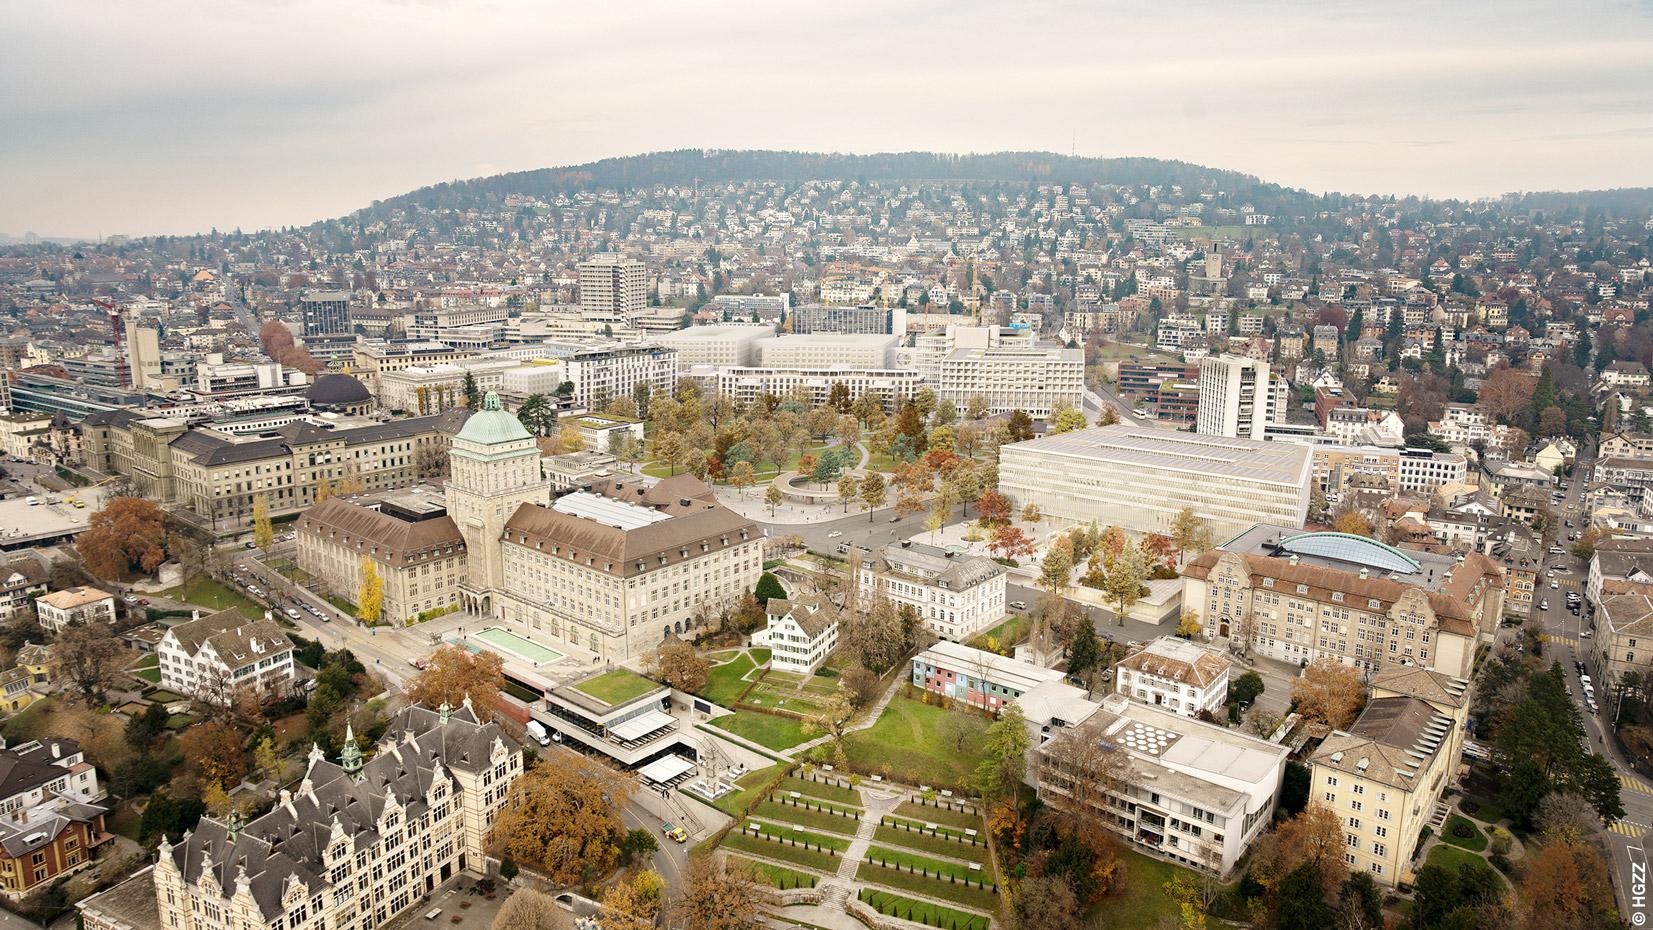 Vogelperspektive vom Hochschulgebiet in Zürich. Mittendrin steht das Bodmerhaus.